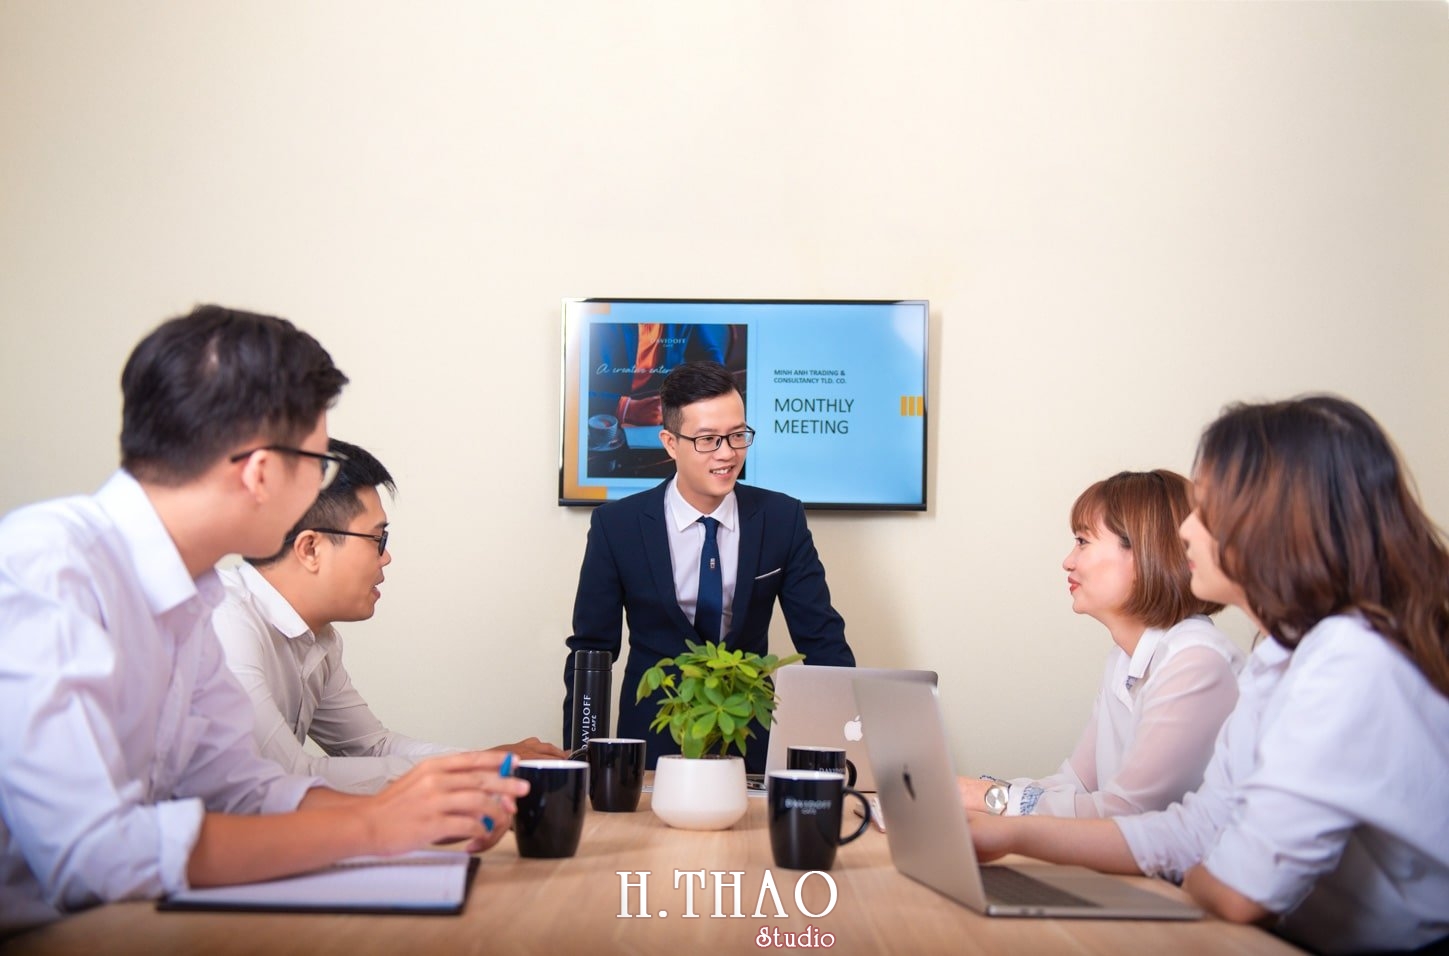 anh cong ty 1 min - Studio chụp ảnh quảng cáo doanh nghiệp tại Tp.HCM – HThao Studio